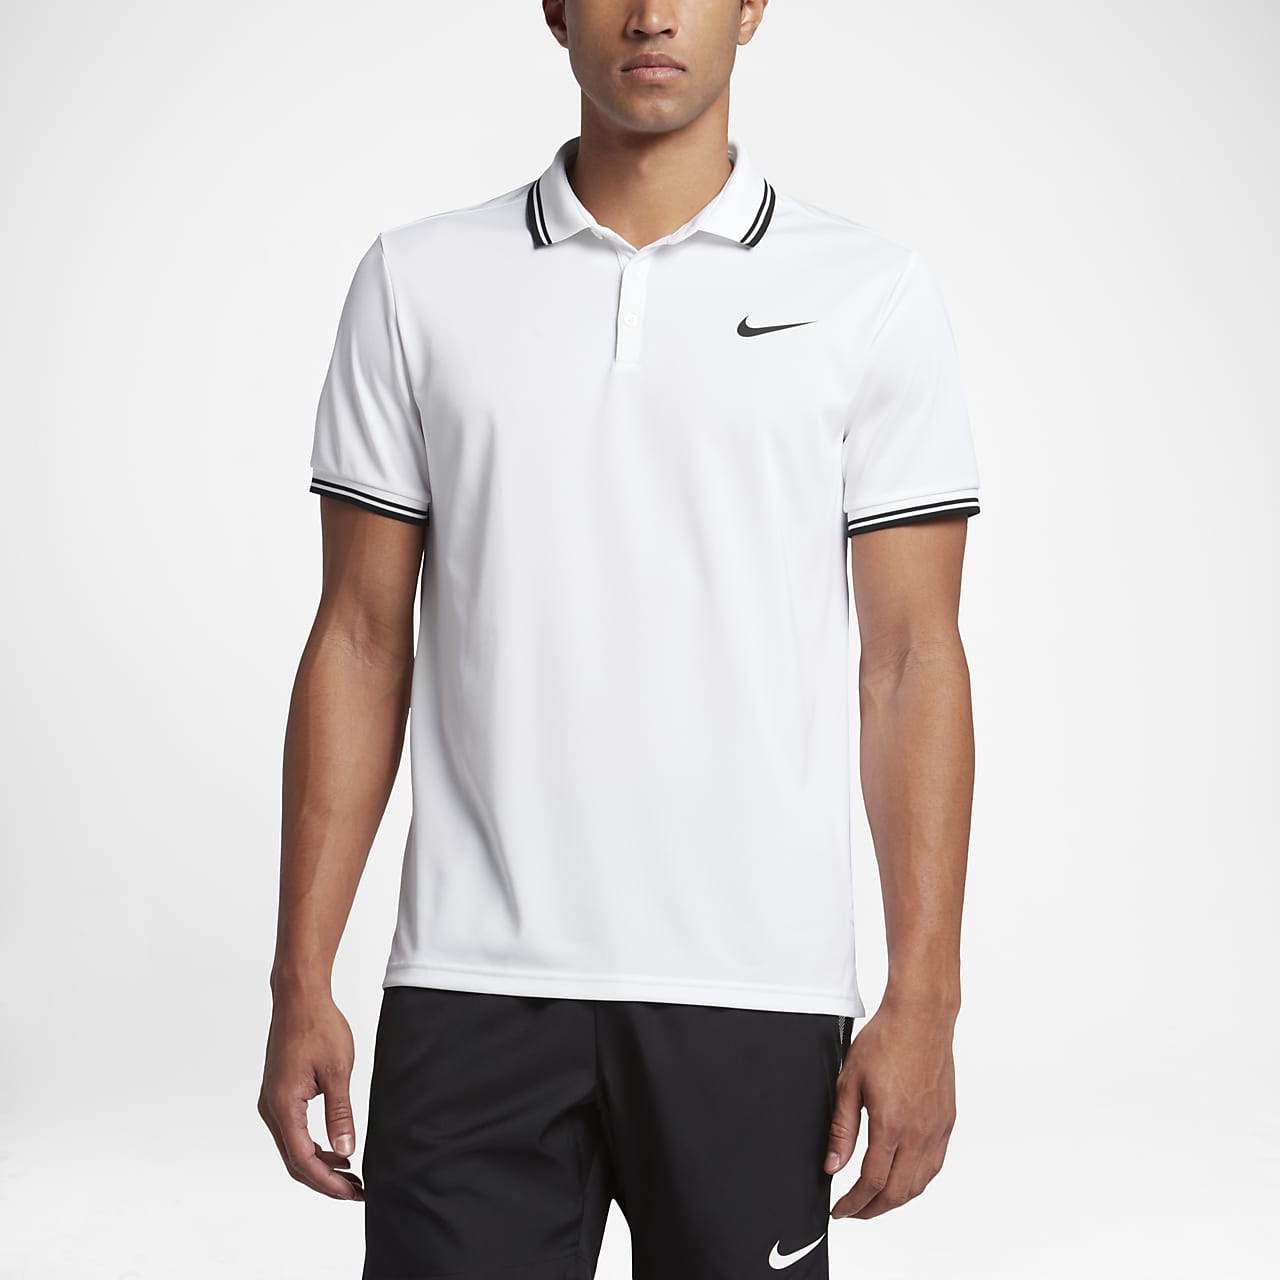 NikeCourt Men's Tennis Polo. Nike SG